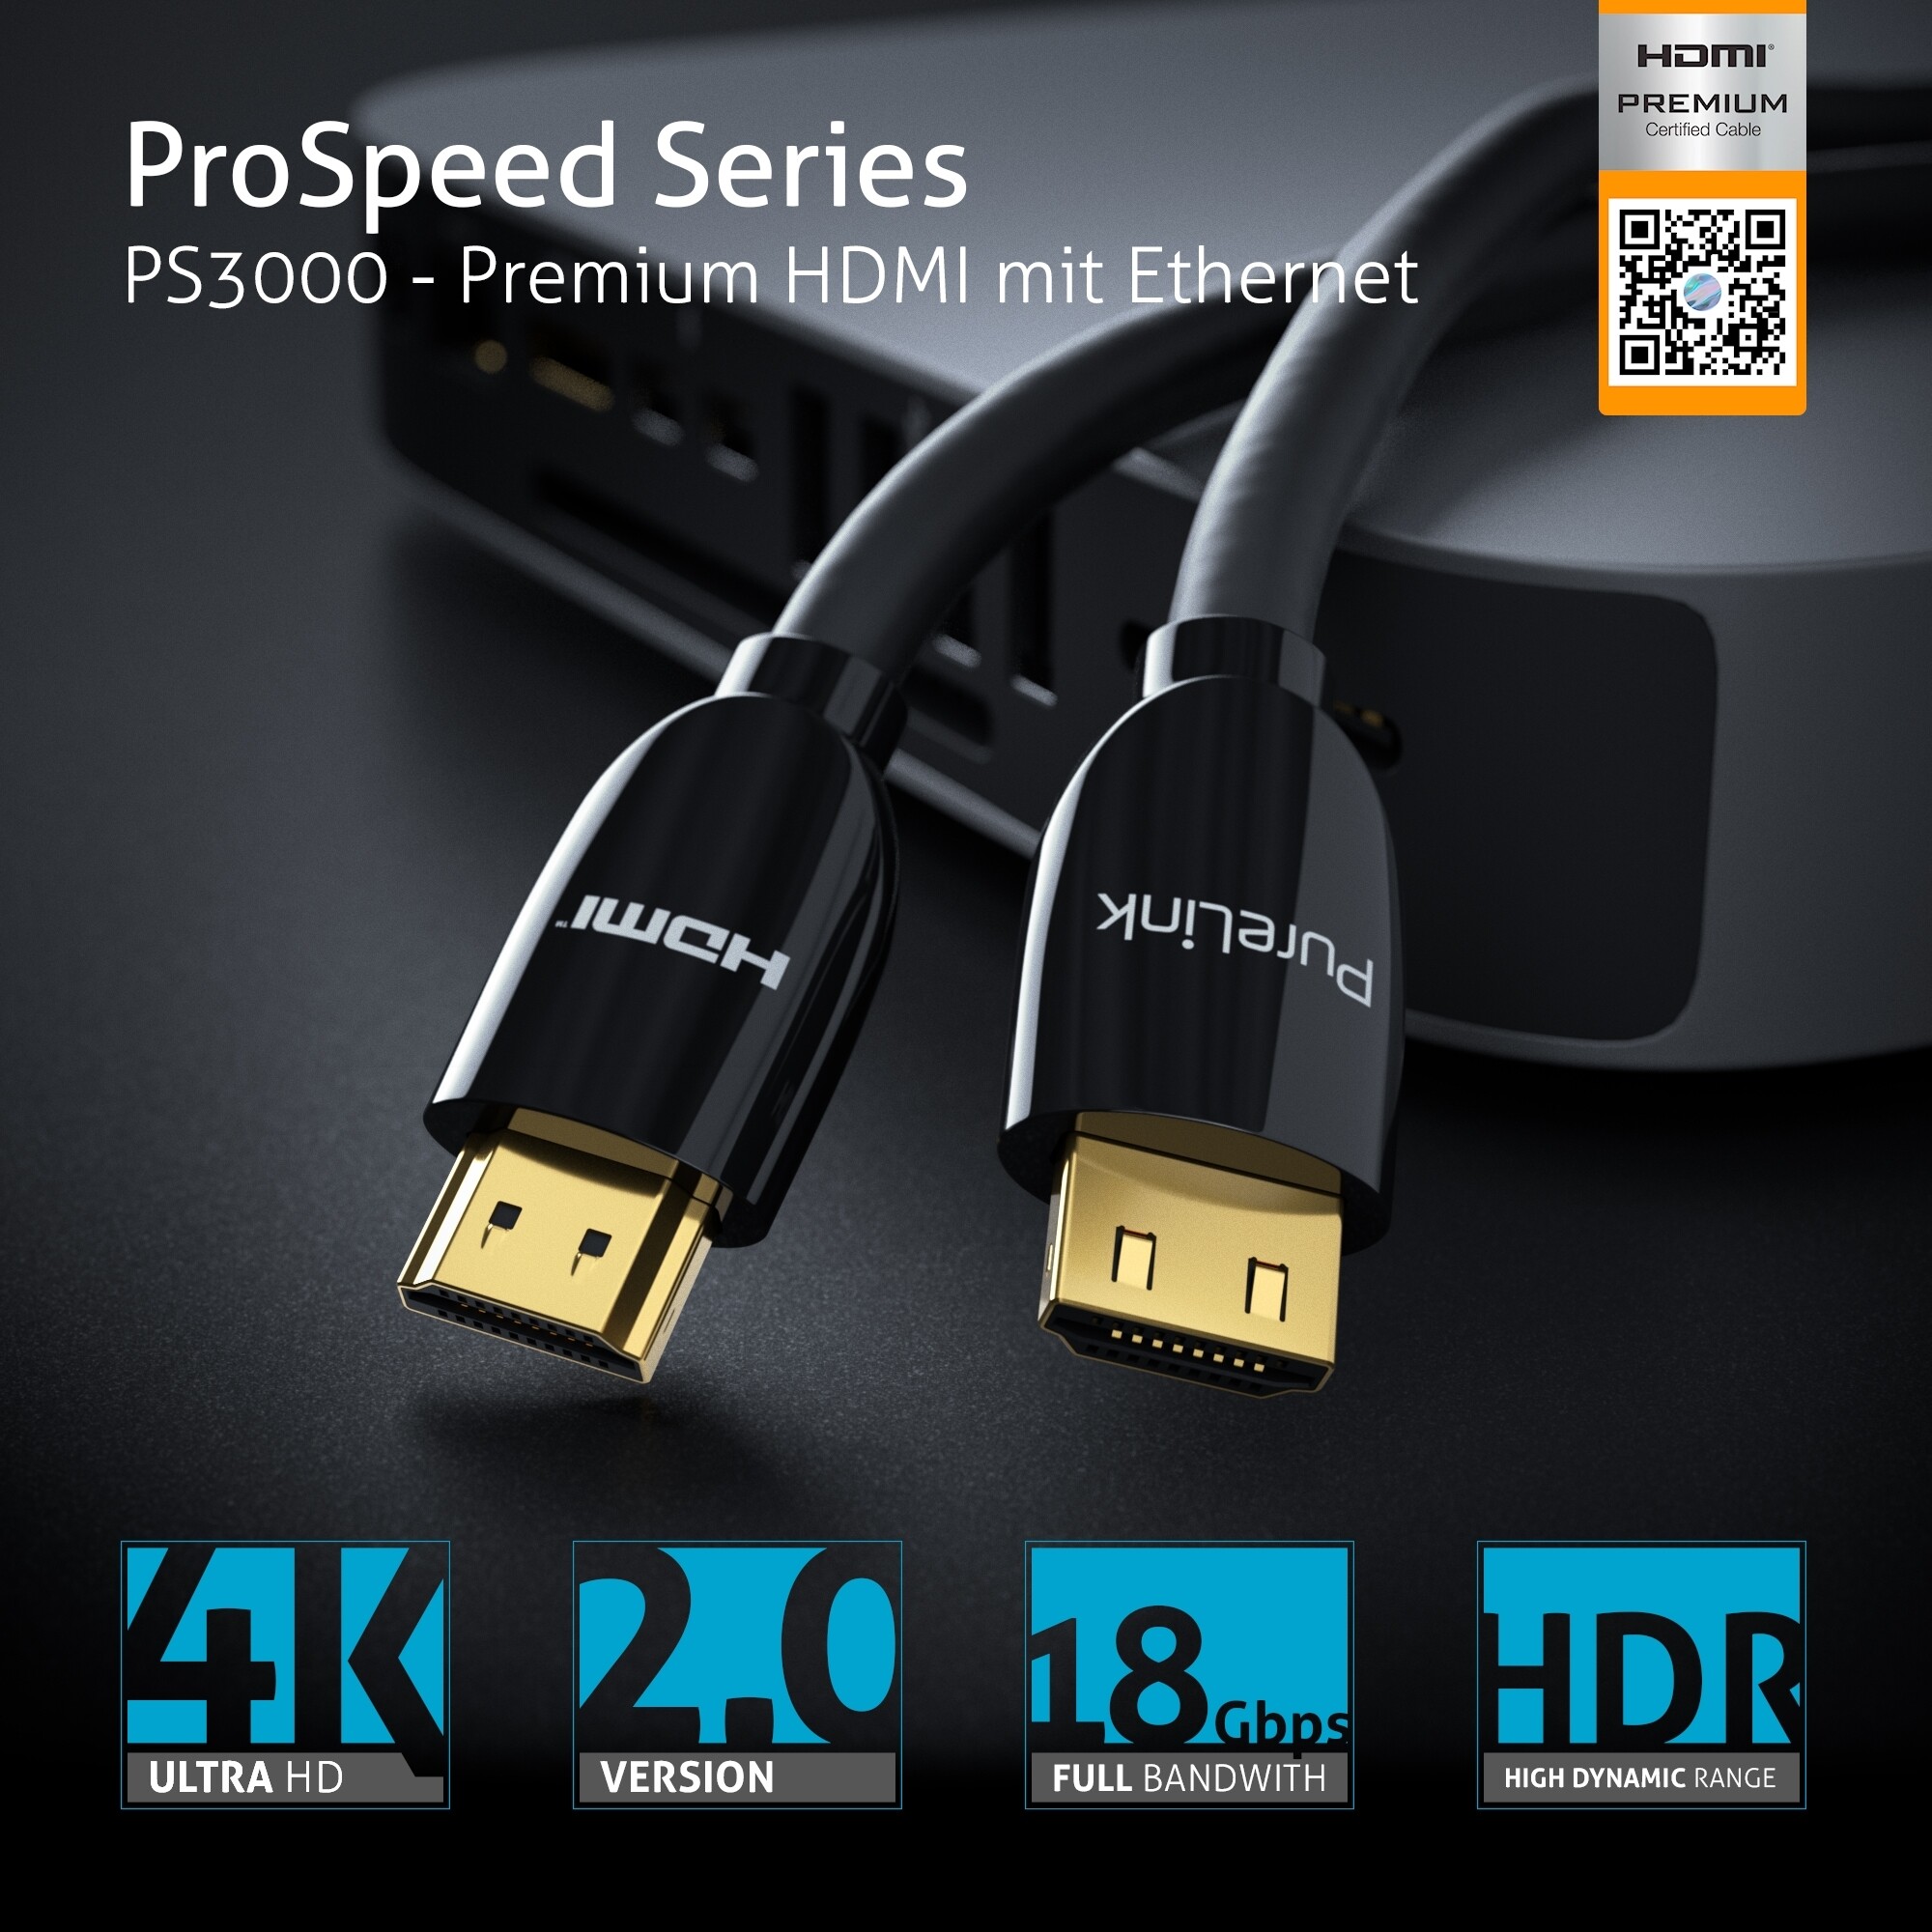 PureLink-PS3000-Premium-Highspeed-HDMI-Kabel-mit-Ethernet-Zertifiziert-1-50m